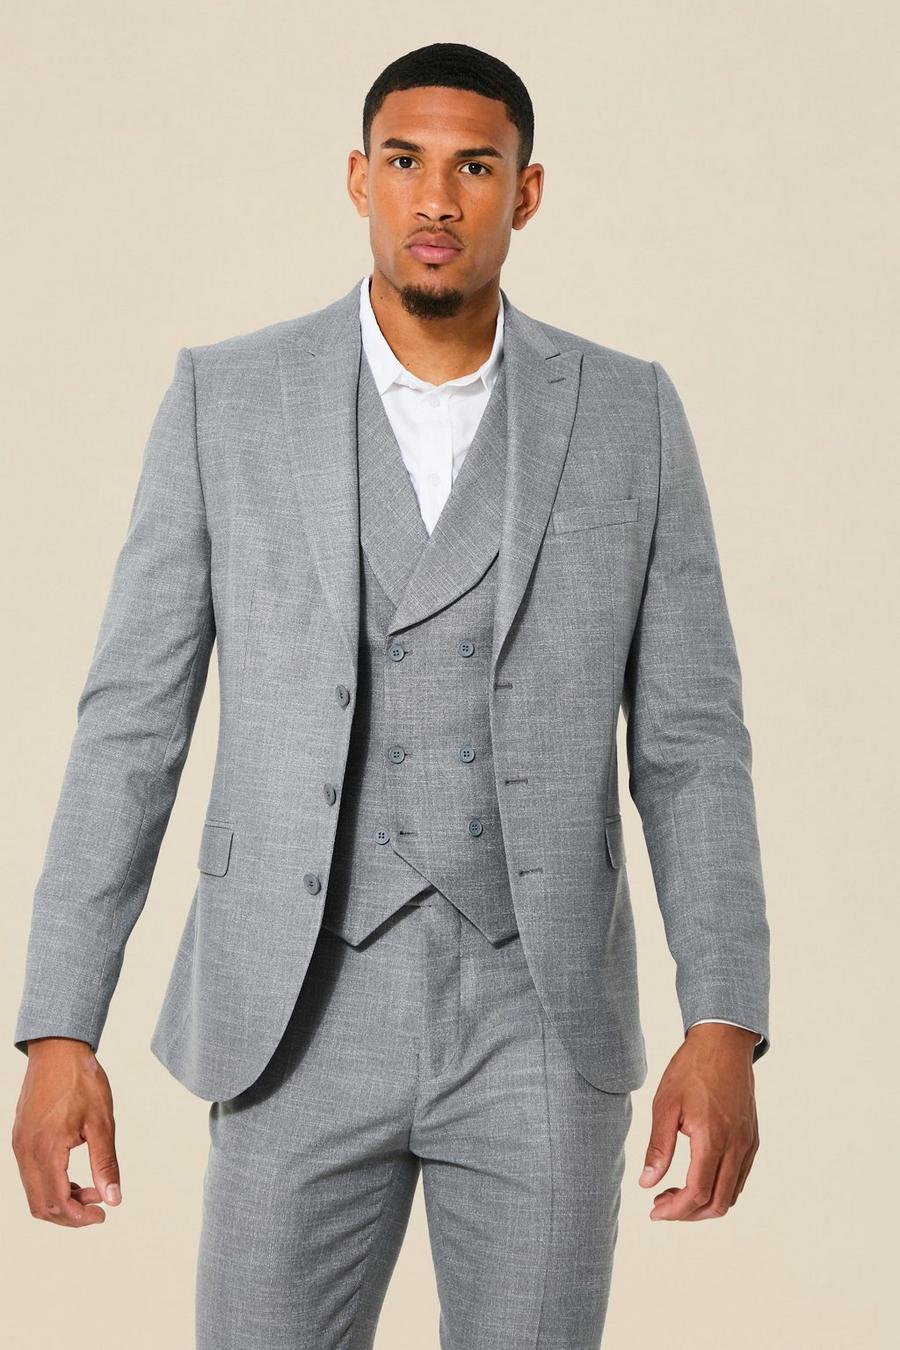 אפור gris ז'קט חליפה בגזרה צרה עם רכיסה אחת, לגברים גבוהים